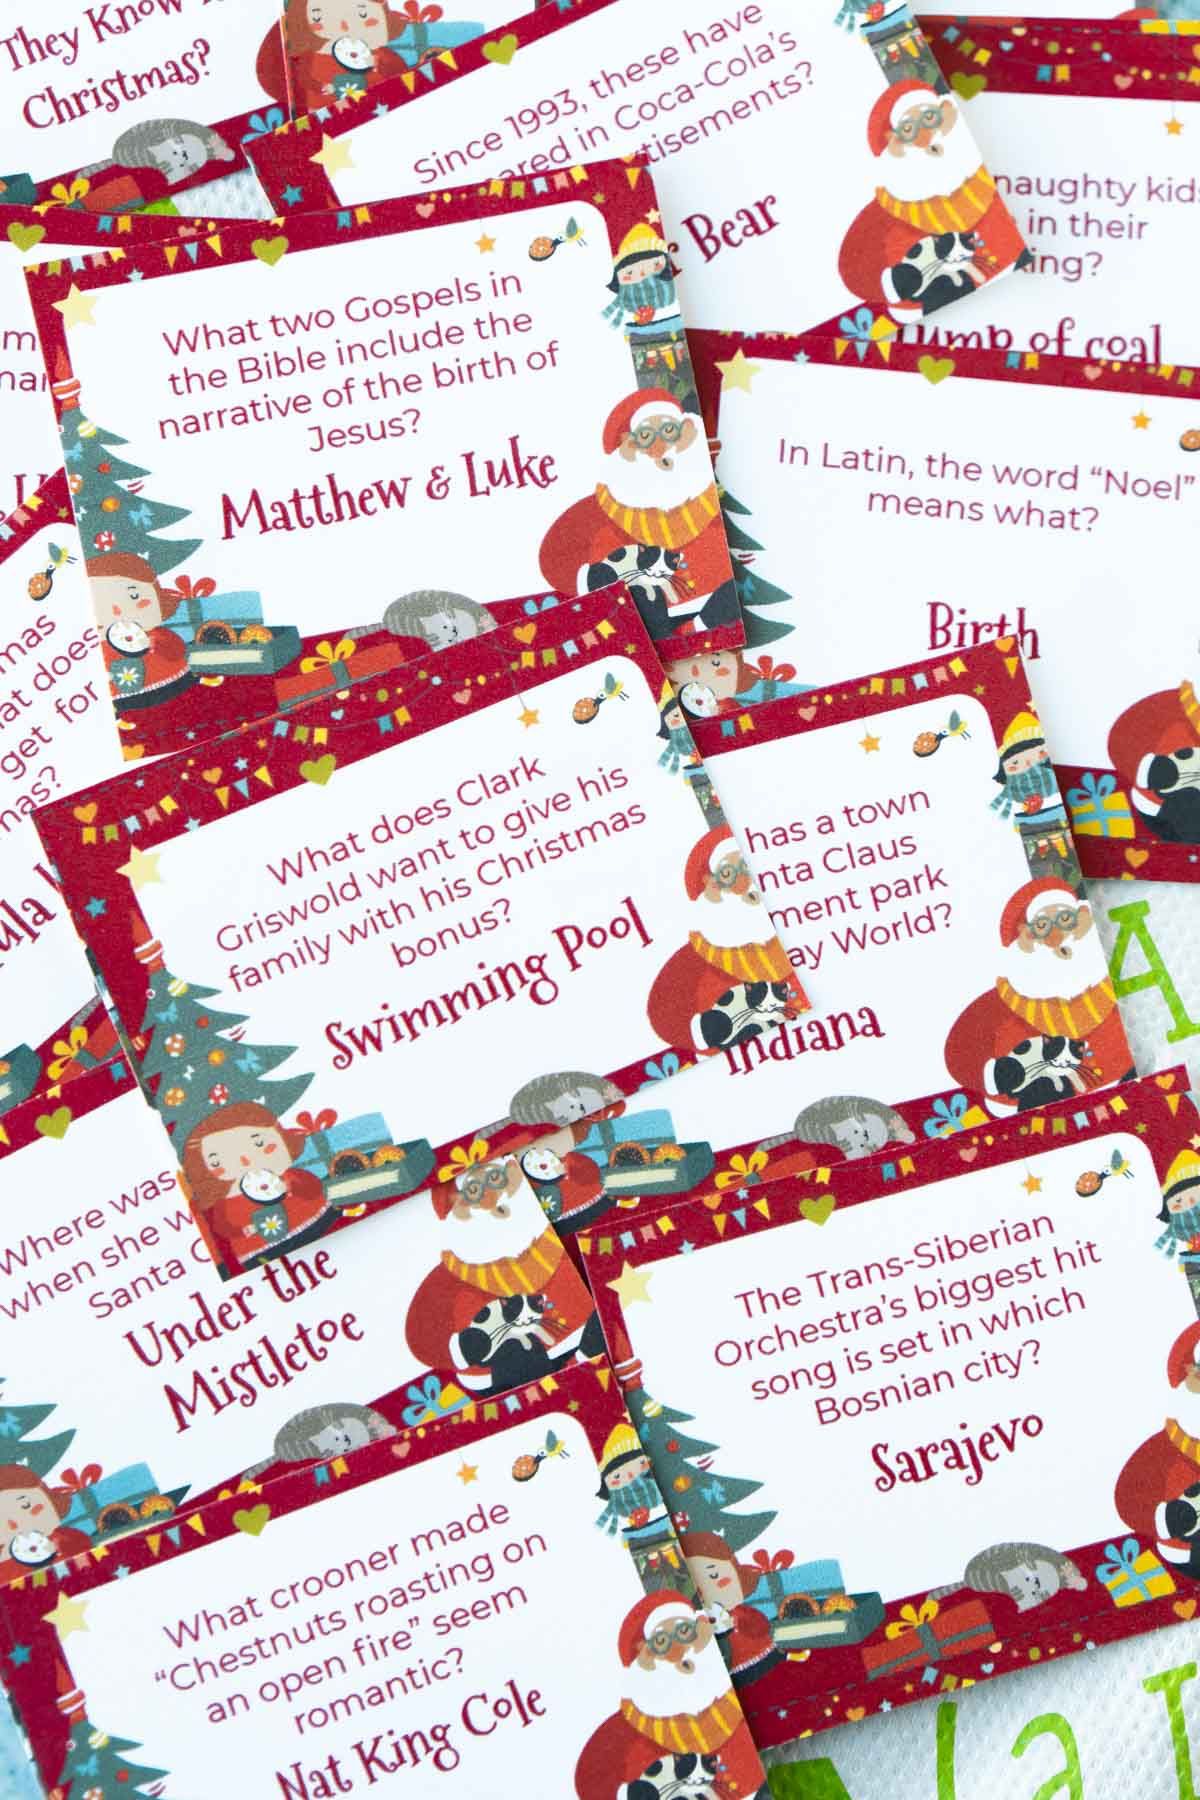 Χριστουγεννιάτικες ασήμαντες ερωτήσεις σε κάρτες σε έναν σωρό